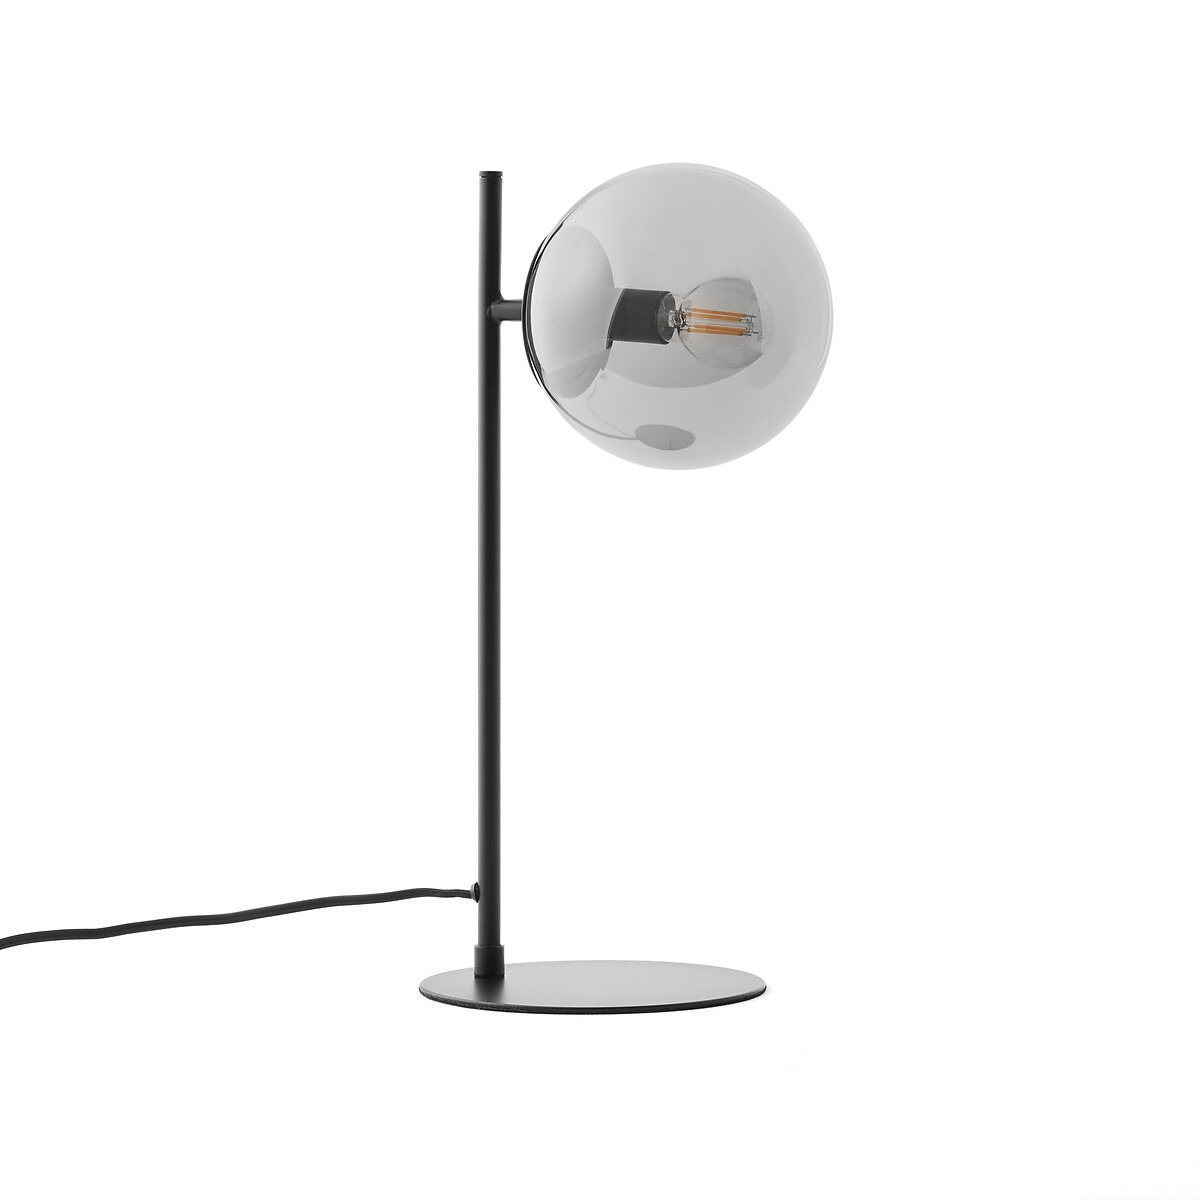 Atea Metal and Smoked Glass Table Lamp - image 1